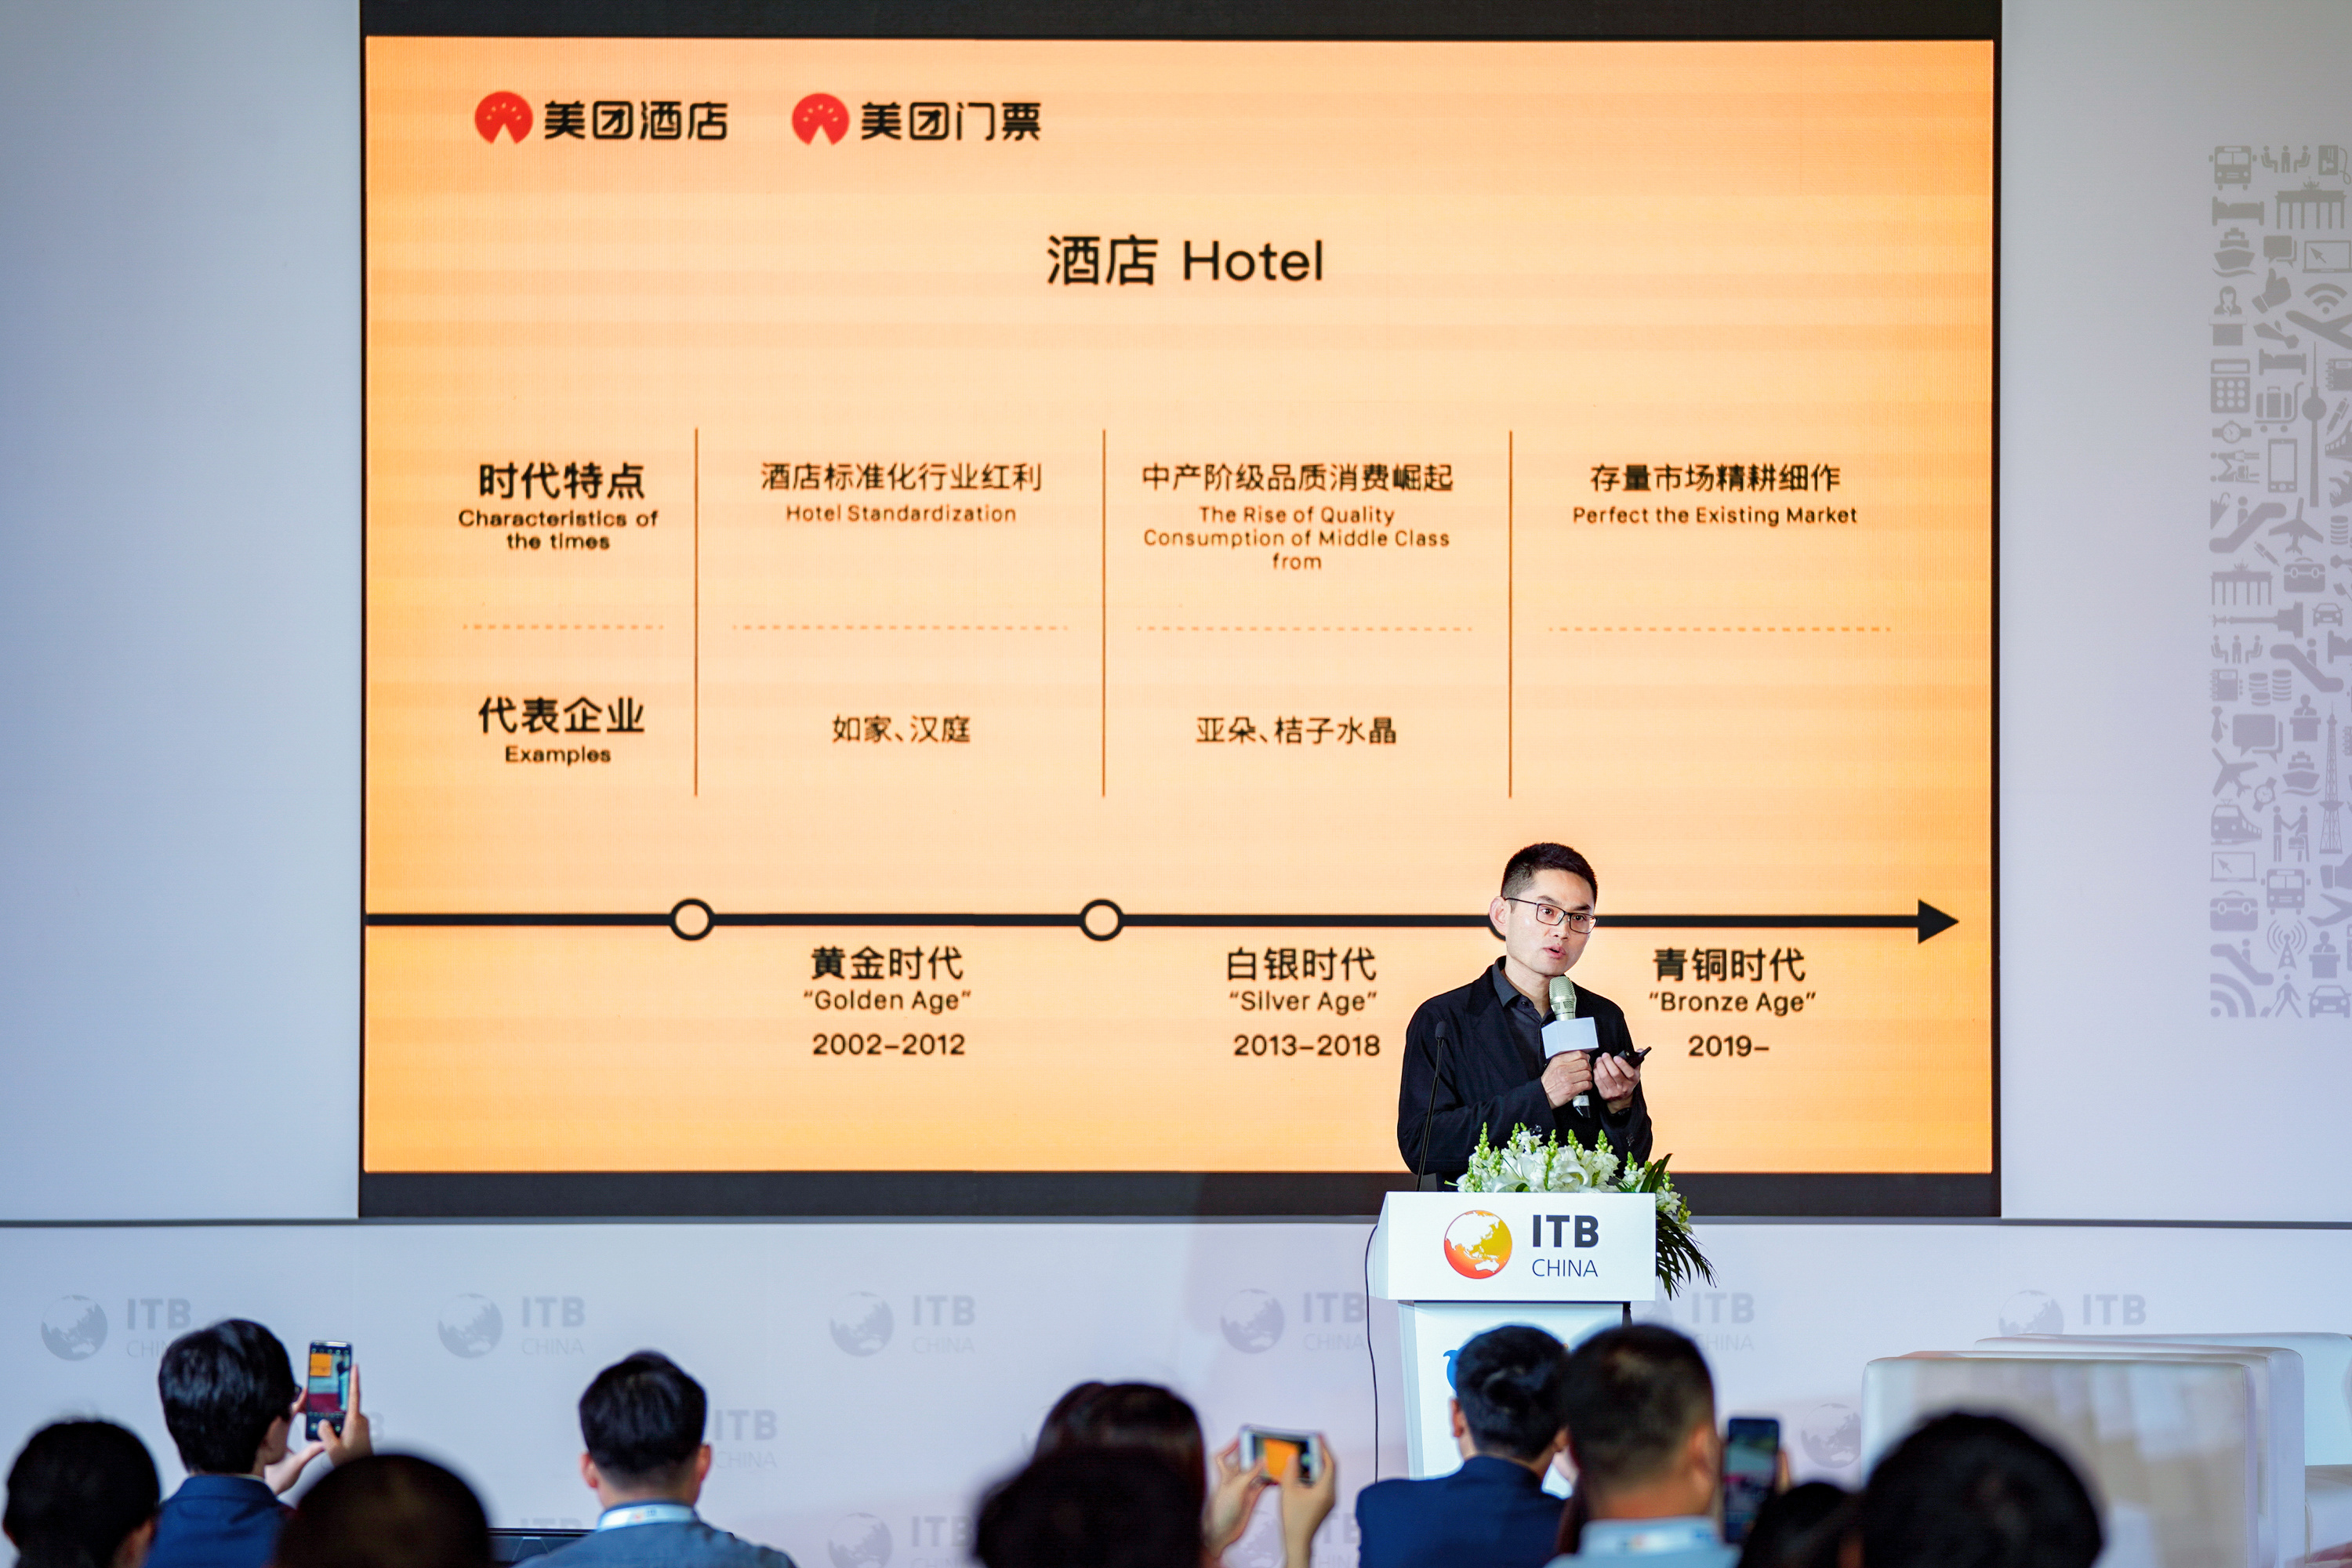 美团副总裁郭庆：酒店旅游进入青铜时代，需开源节流以精耕存量